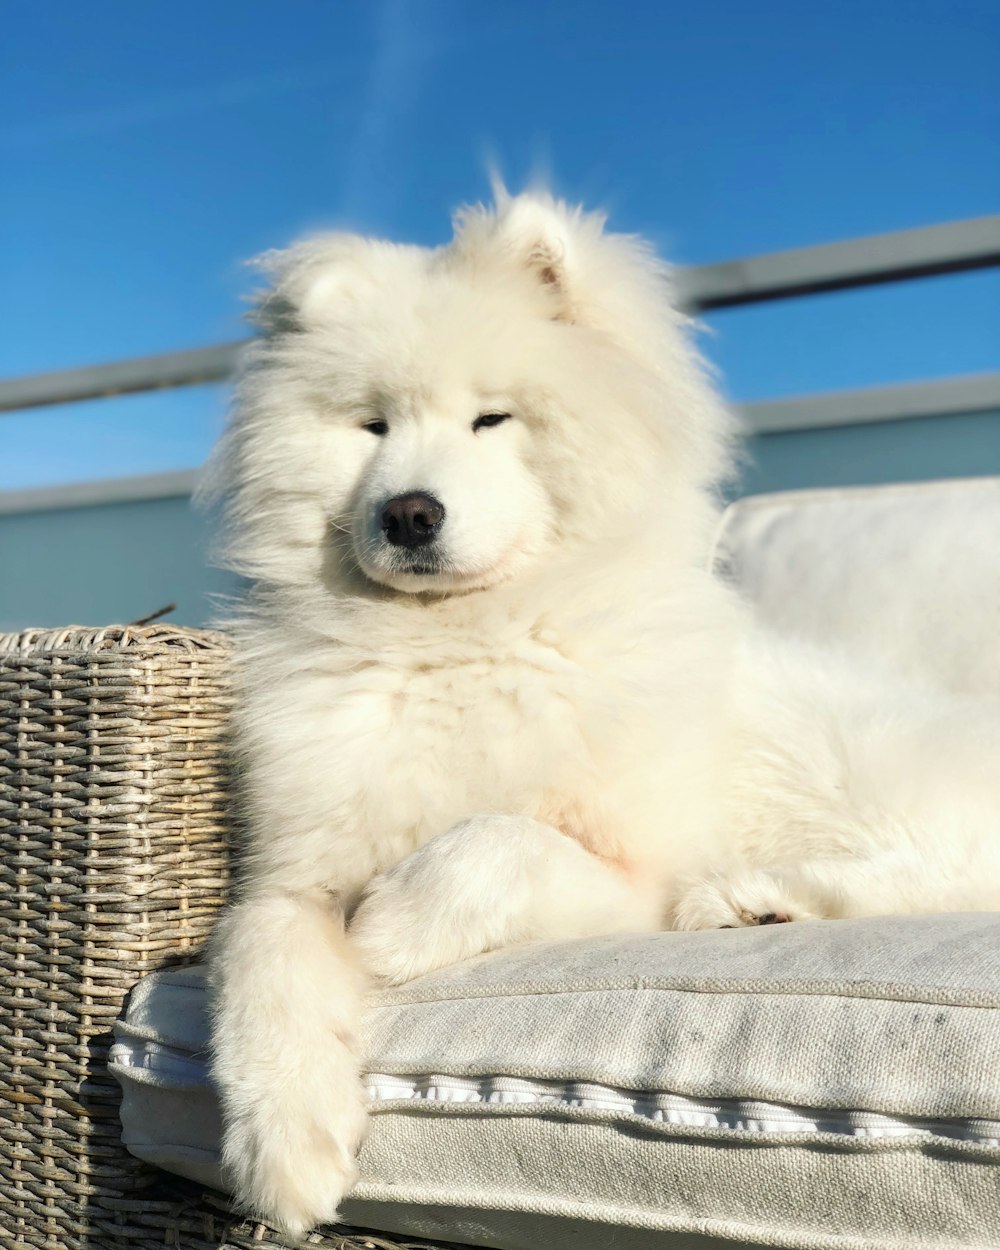 long-coated white dog on sofa